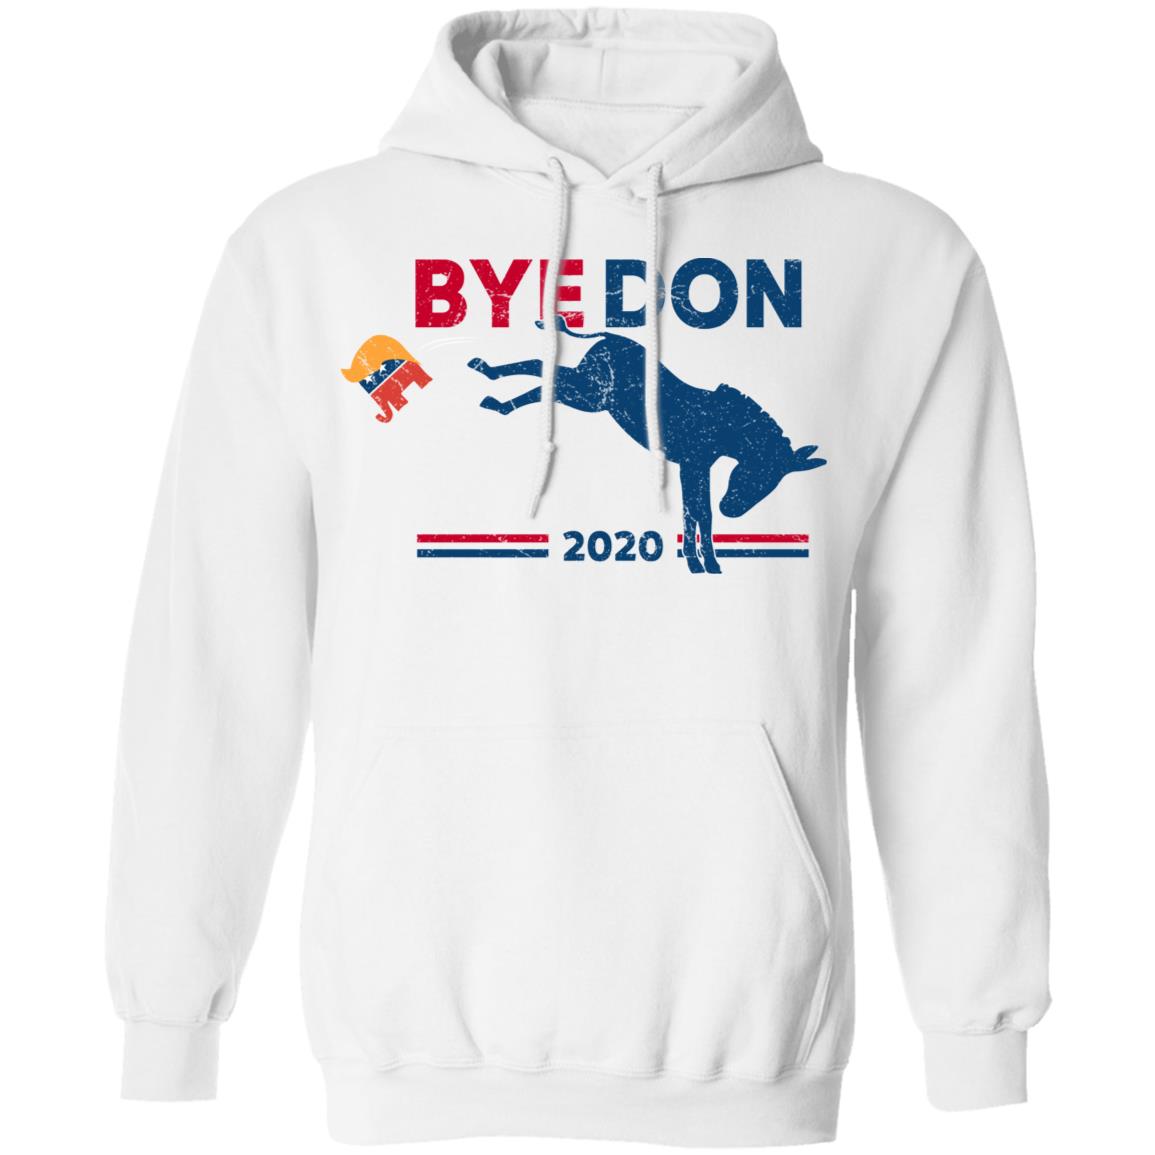 Byedon Joe Biden 2020 American Shirt